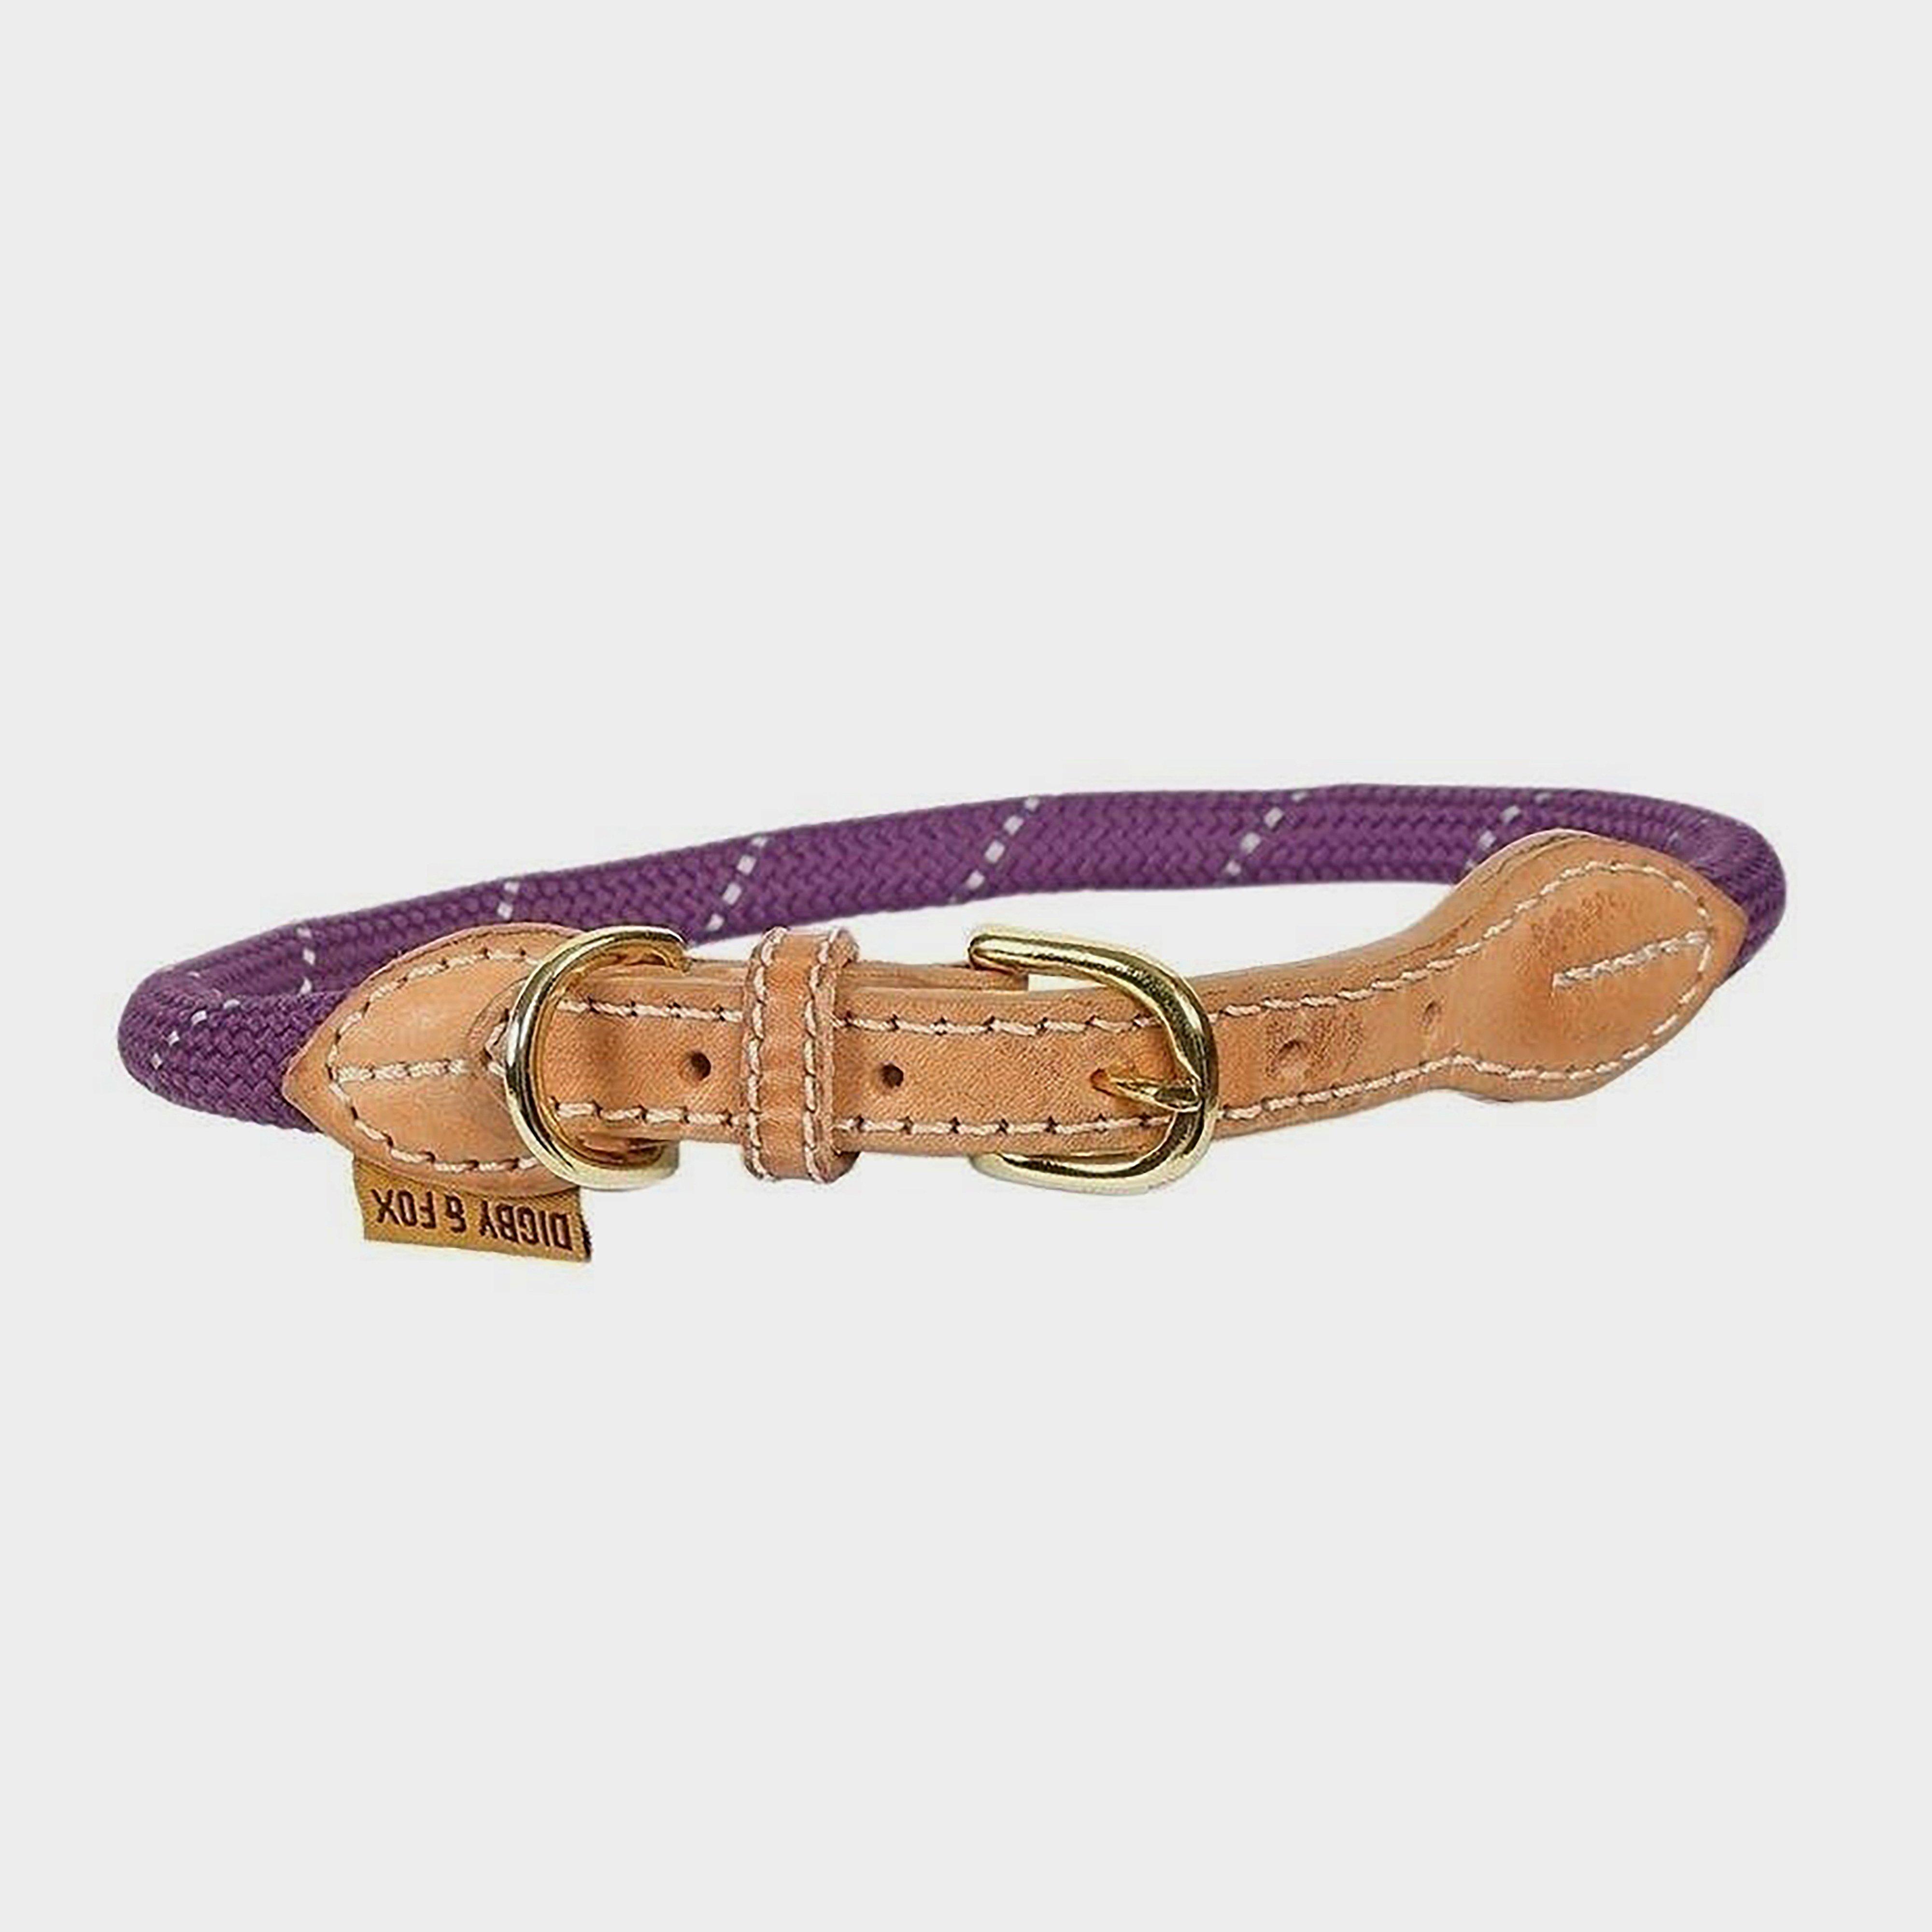 DigbyandFox DigbyandFox Reflective Dog Collar - Purple/purple  Purple/purple